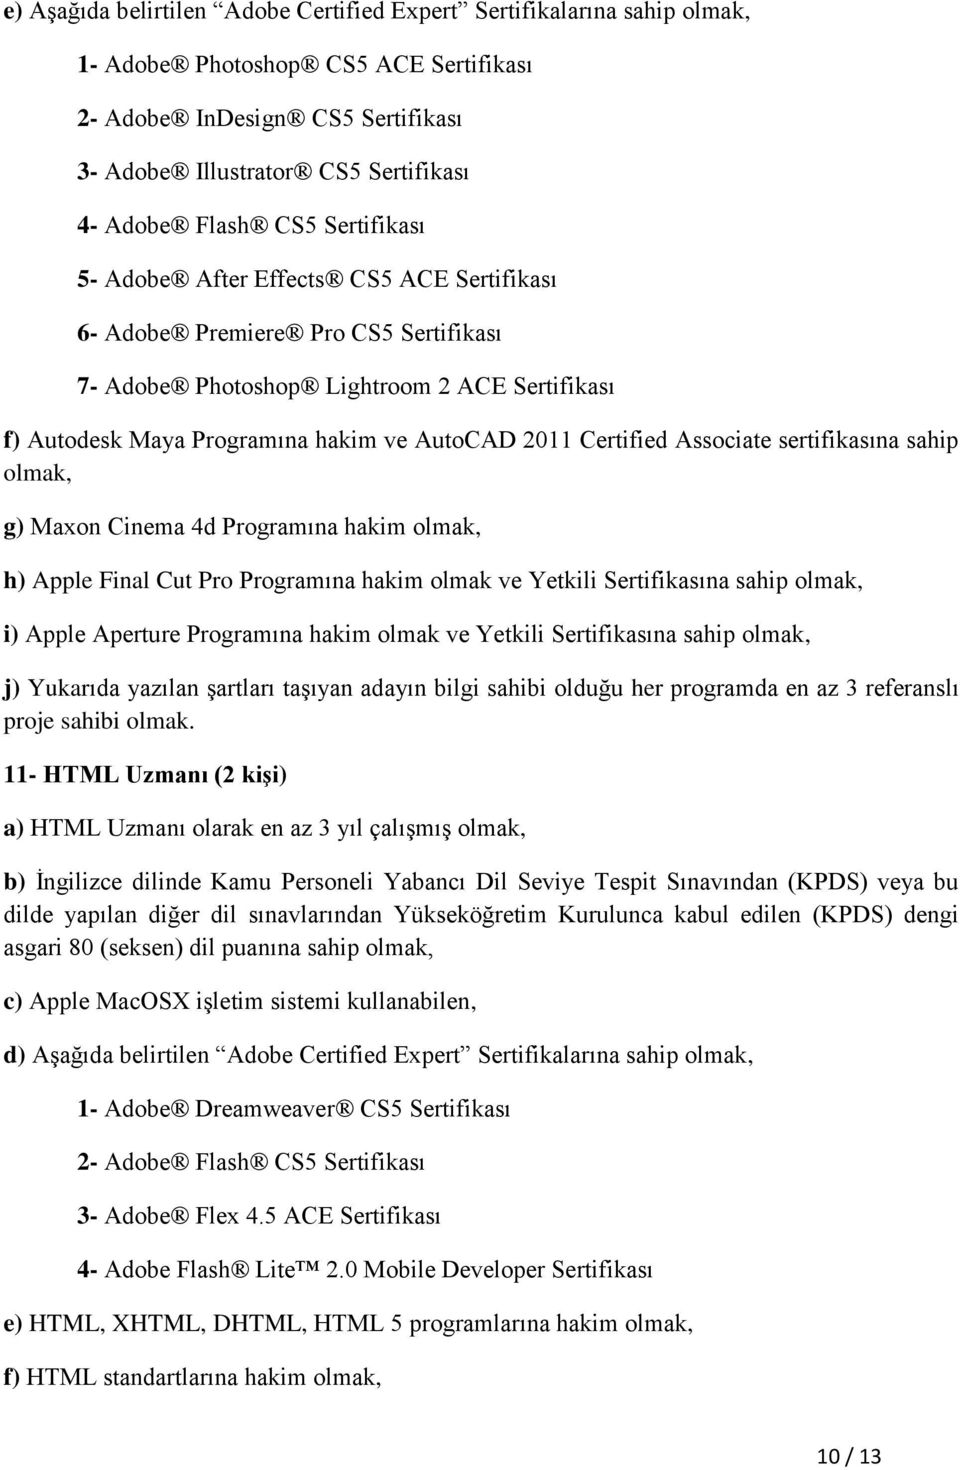 Certified Associate sertifikasına sahip olmak, g) Maxon Cinema 4d Programına hakim olmak, h) Apple Final Cut Pro Programına hakim olmak ve Yetkili Sertifikasına sahip olmak, i) Apple Aperture